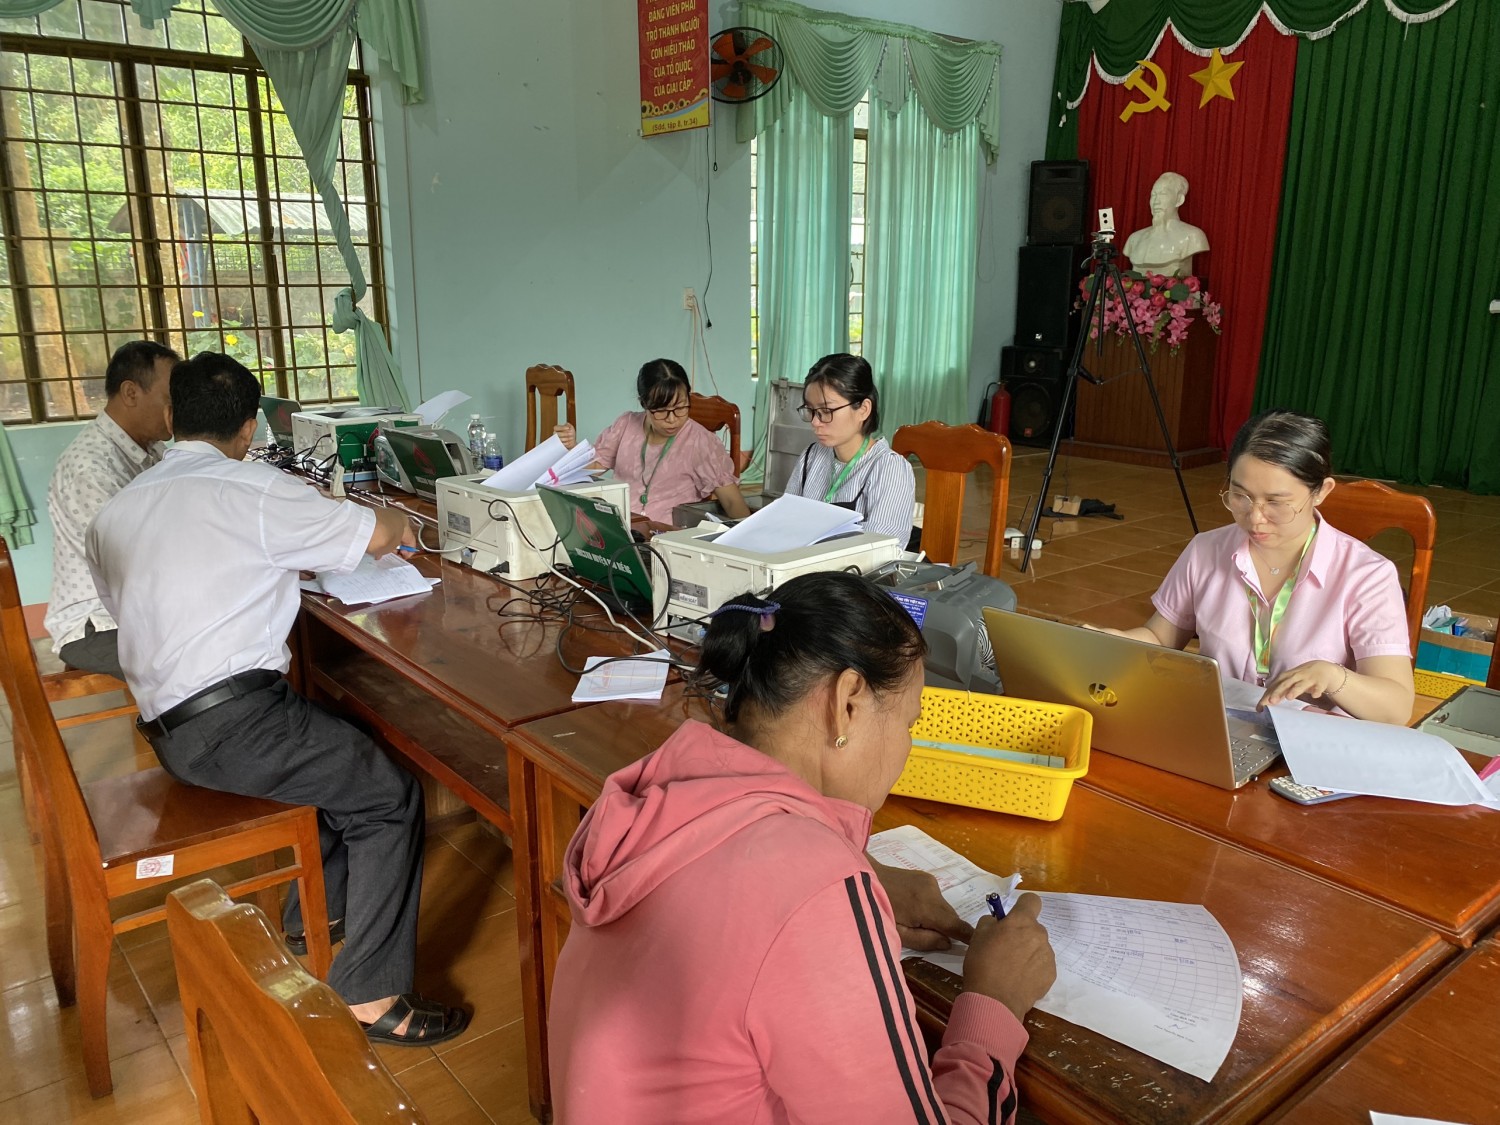 641 hộ nghèo, hộ cận nghèo và các đối tượng chính sách khác trên địa bàn xã Long Hưng được tiếp cận dịch vụ ngân hàng